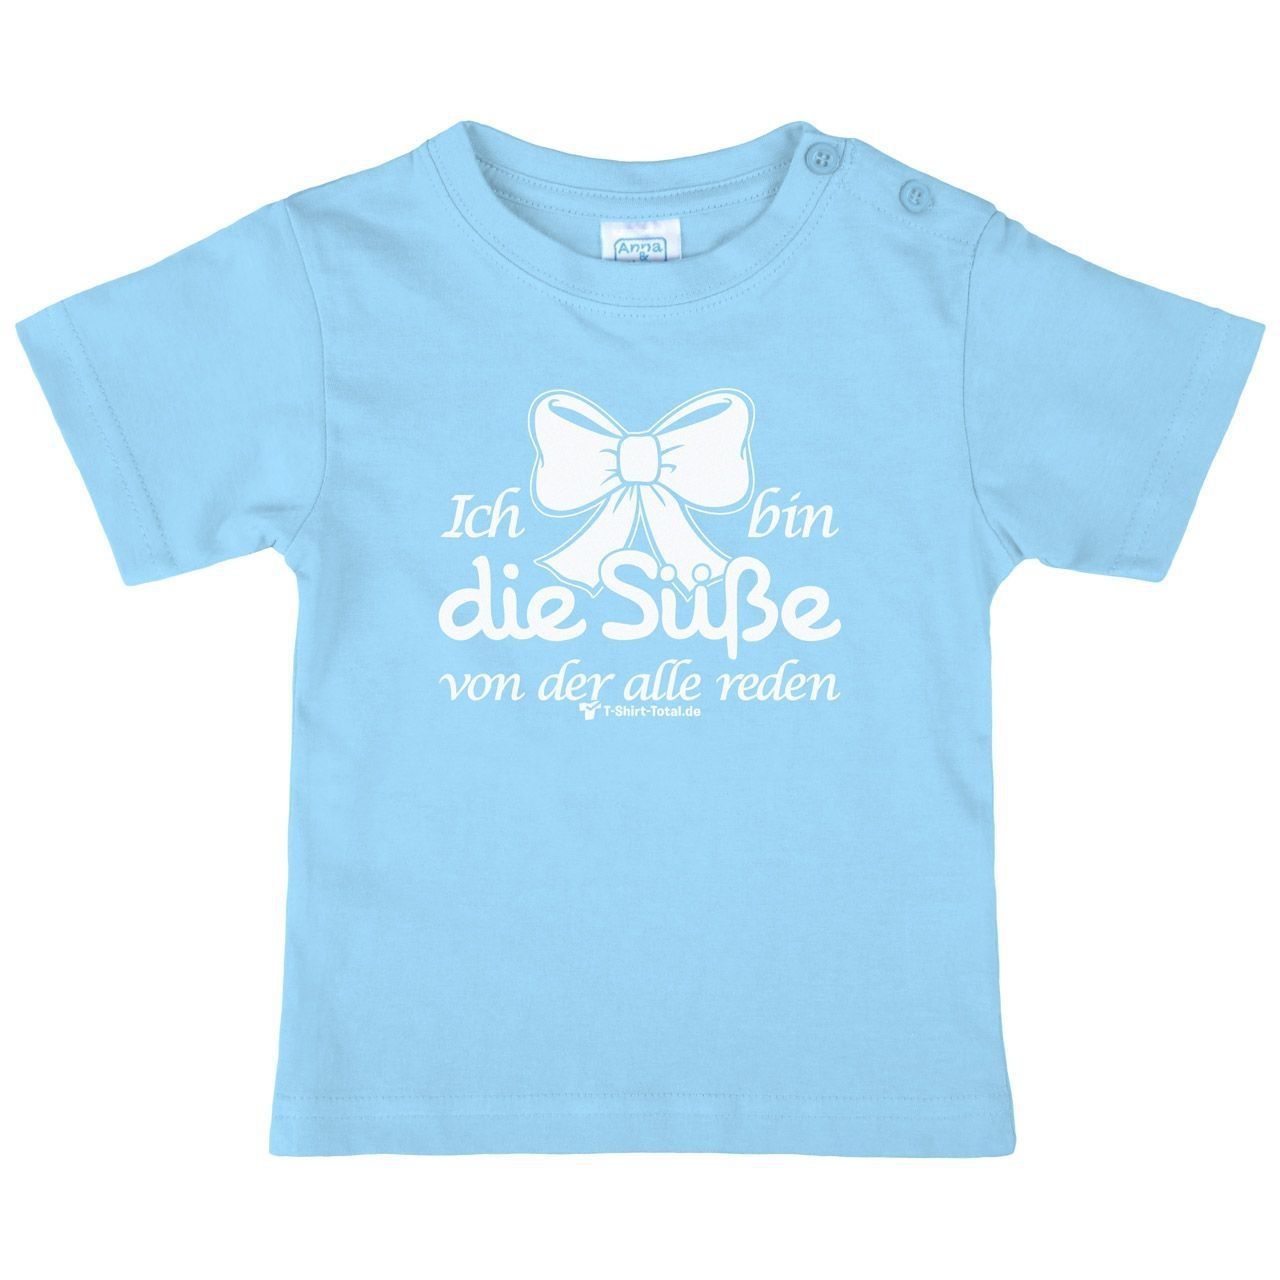 Die Süße Kinder T-Shirt hellblau 80 / 86